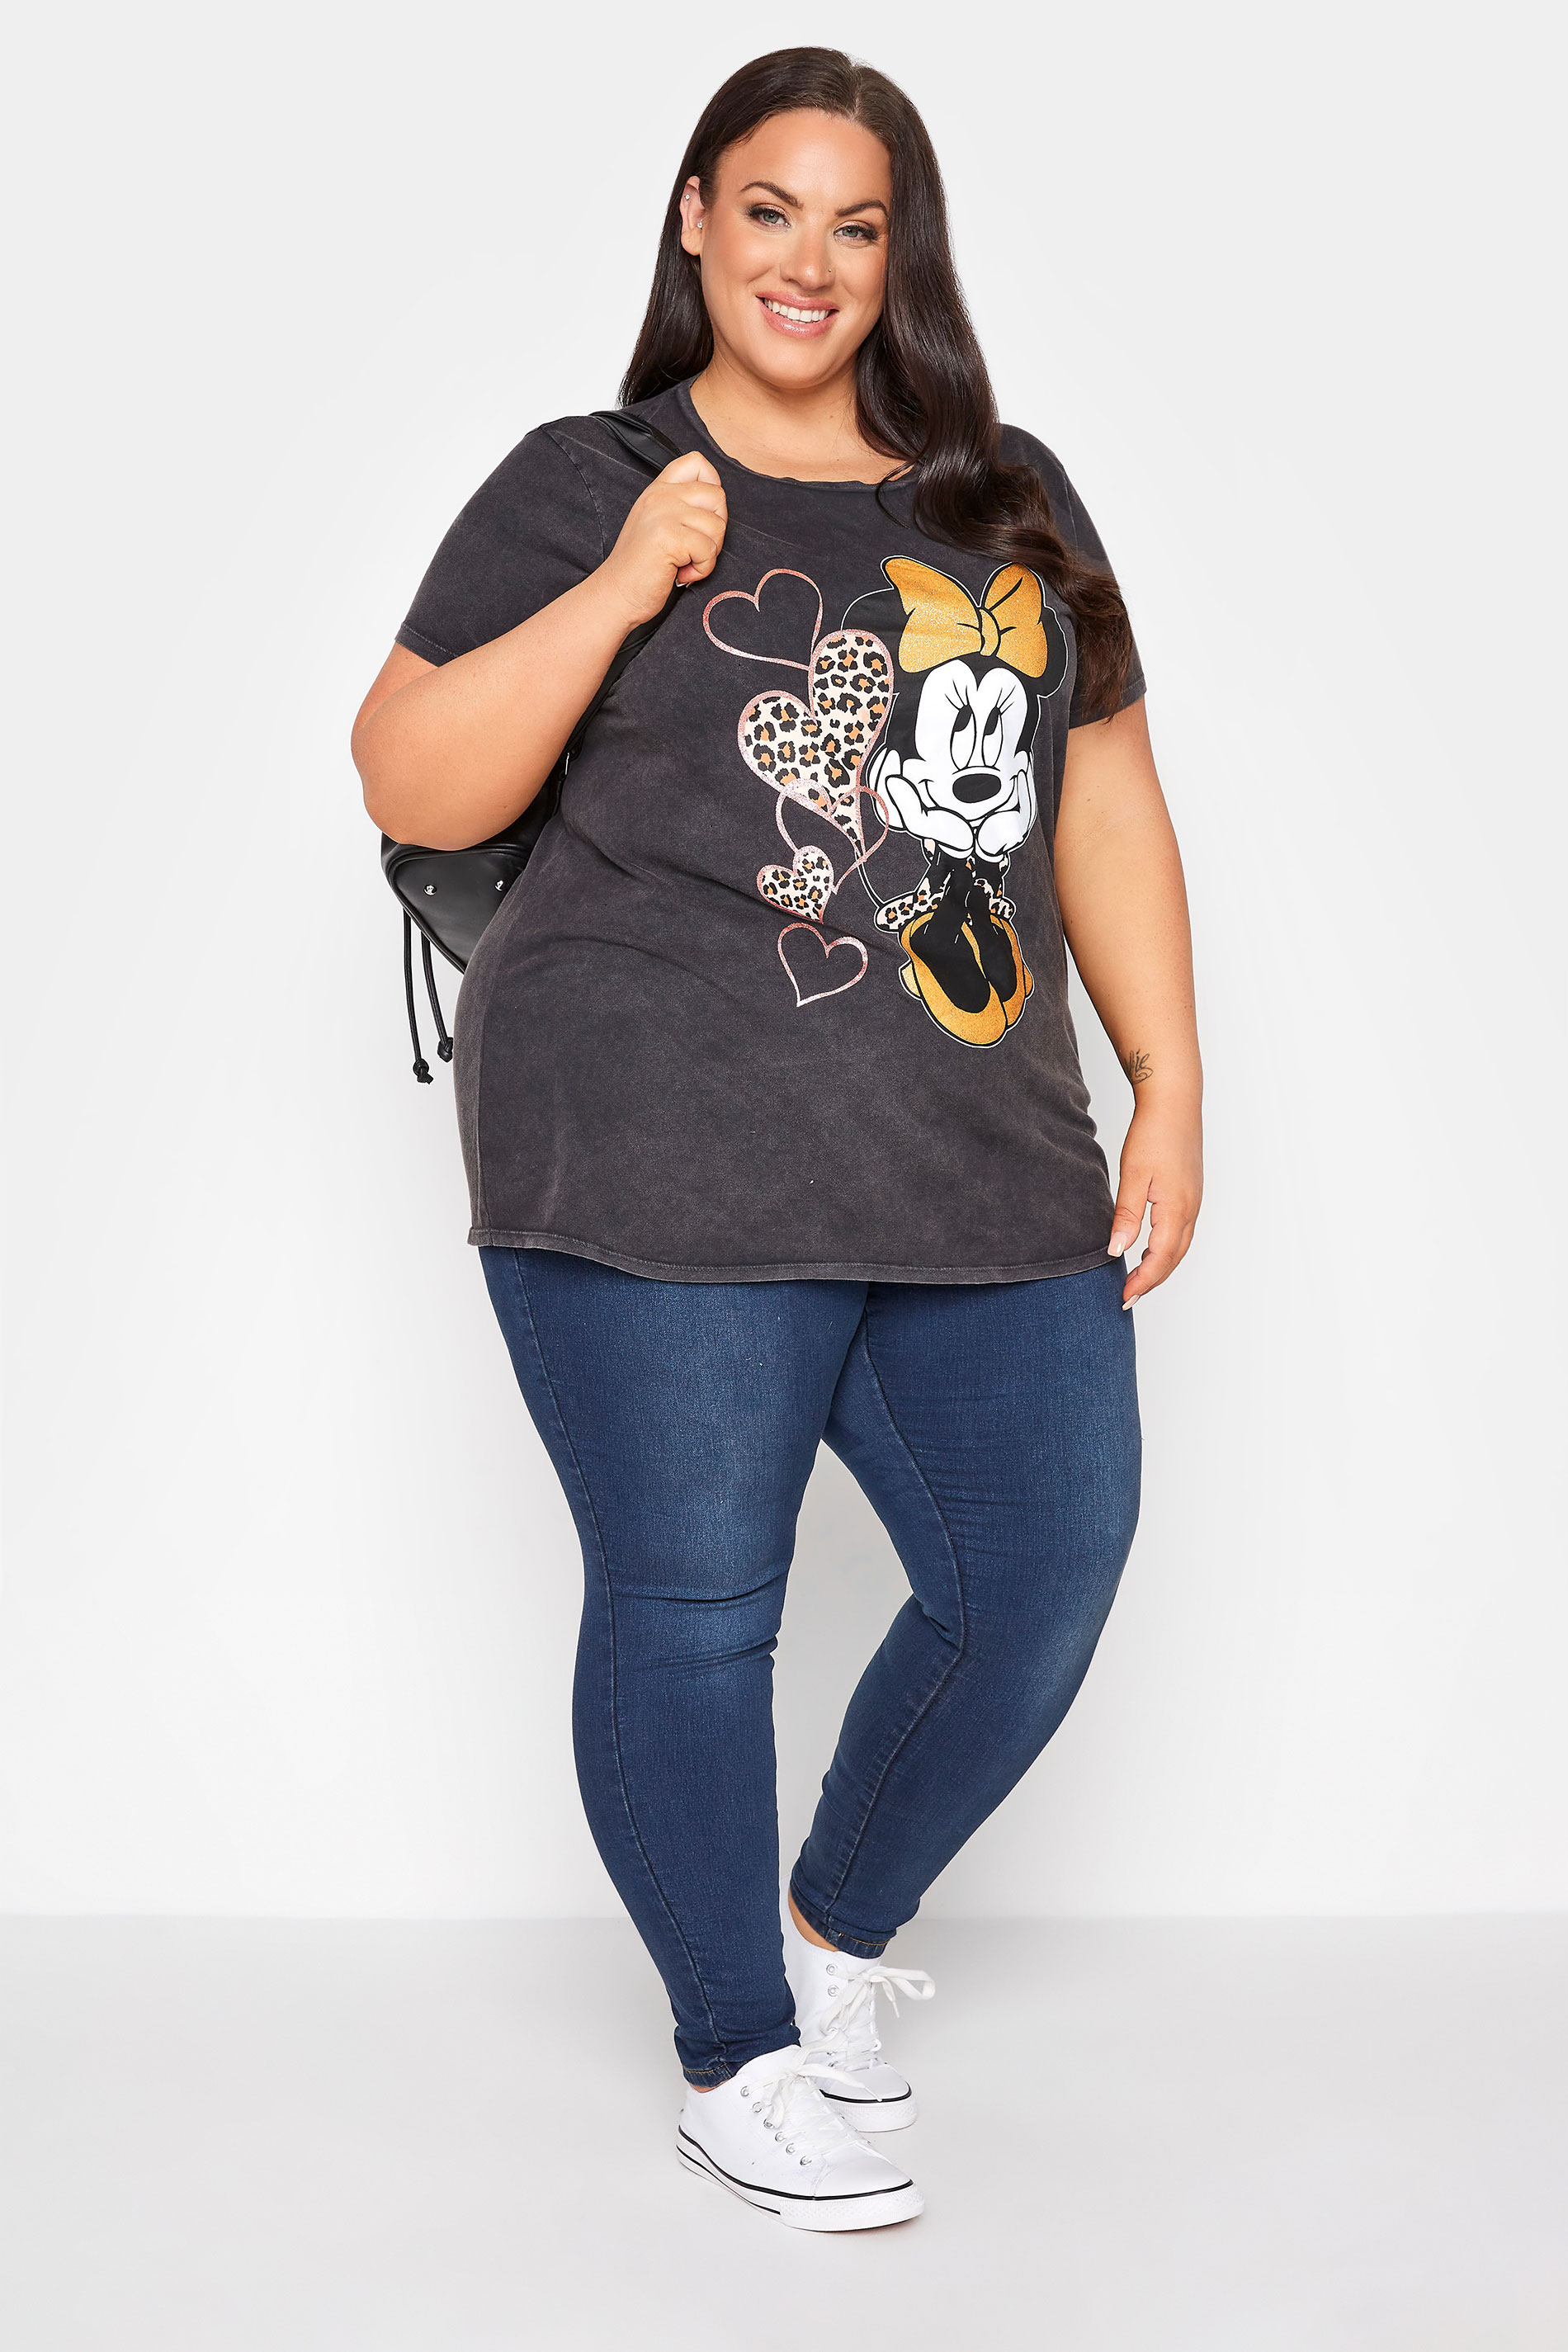 Grande taille  Tops Grande taille  T-Shirts | DISNEY - T-Shirt Gris Charbonneux Minnie Mouse Pailletté - AP17918